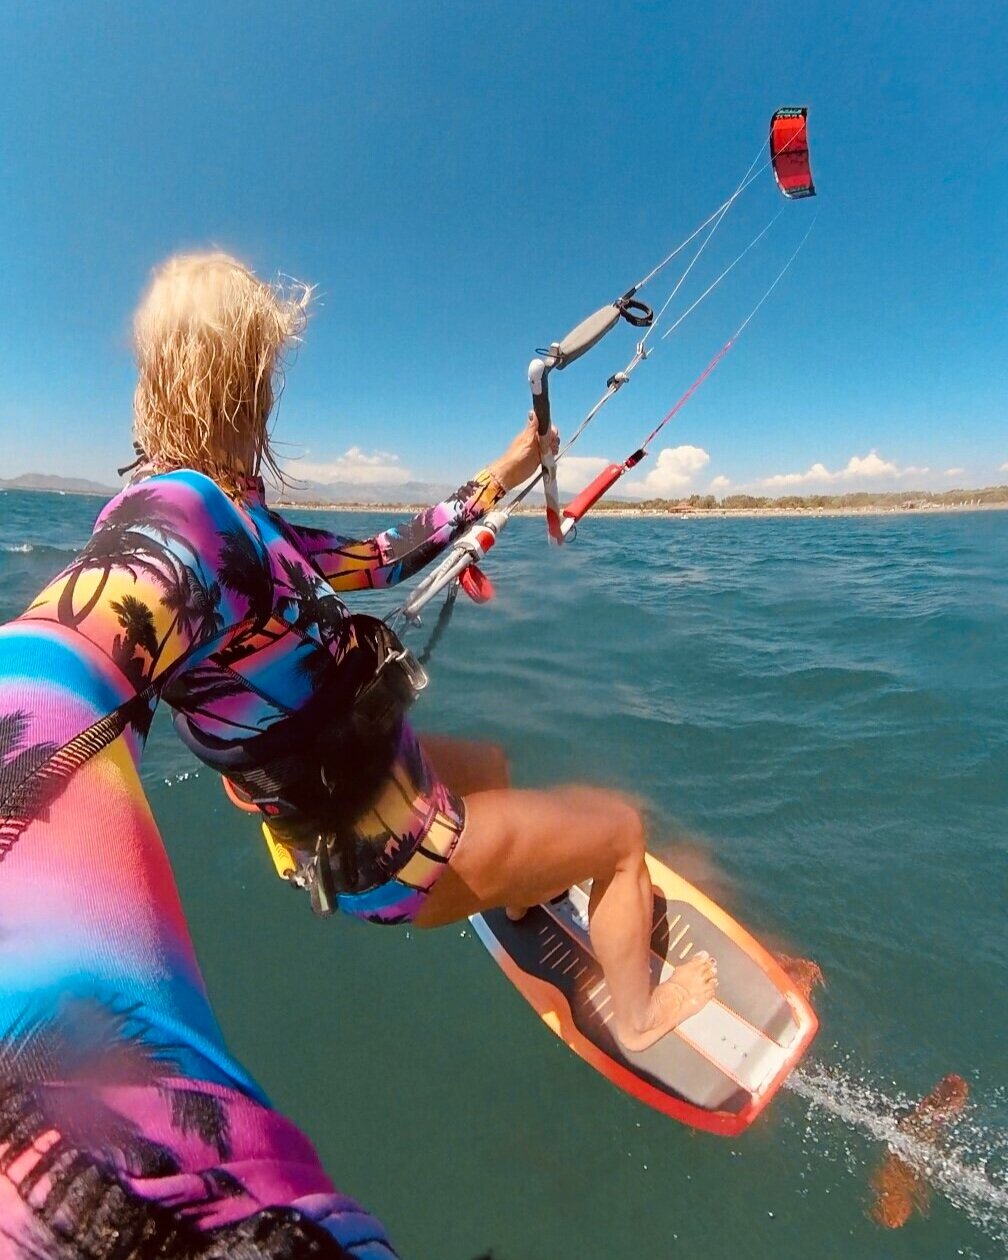 Farbenfrohe Kitesurferin auf einem Foilboard